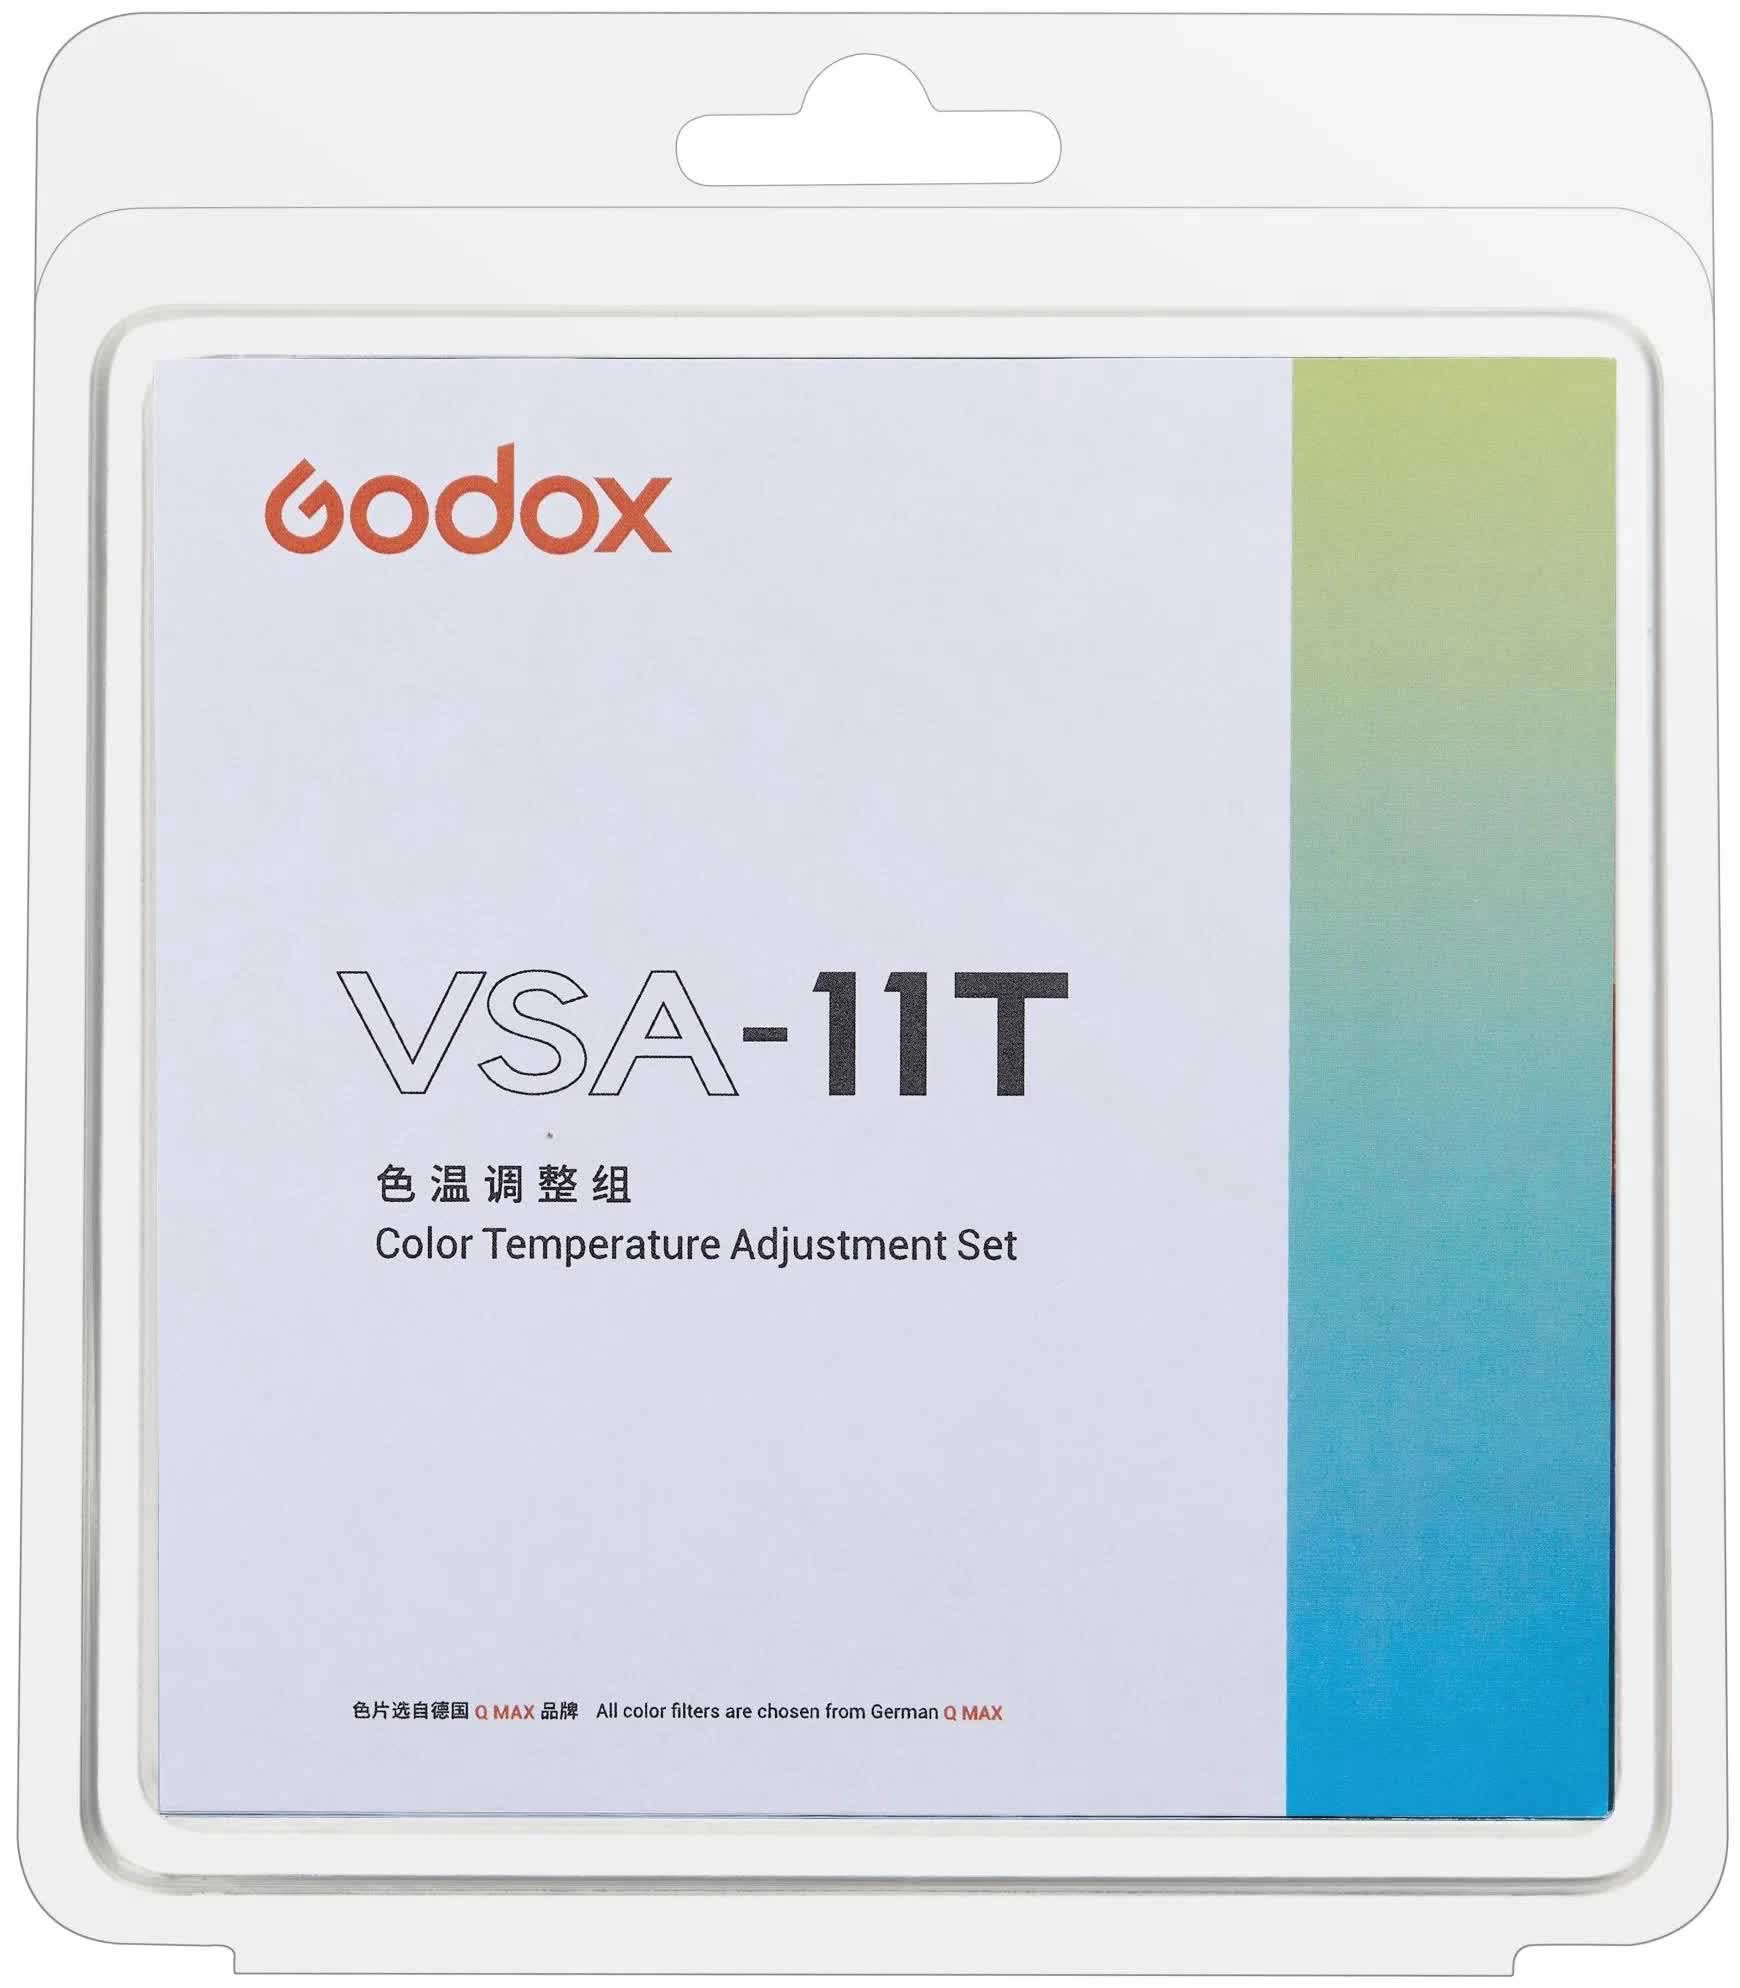 адаптер godox sa 17 bowens Набор цветокоррекционных фильтров Godox VSA-11T